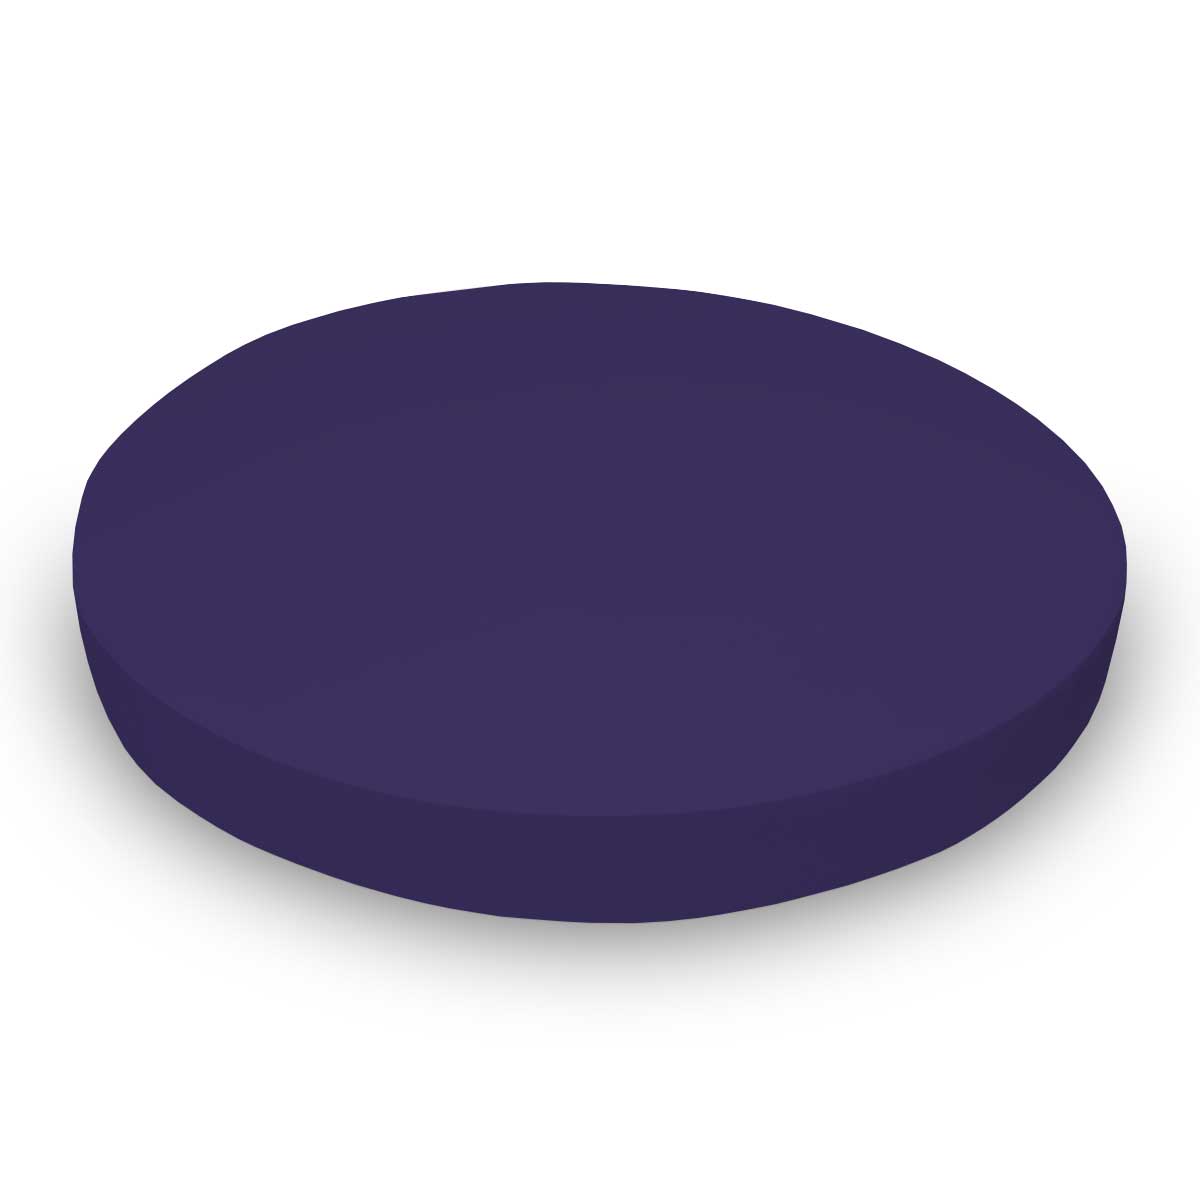 SK-PPL Oval Crib (Stokke Sleepi) - Purple Jersey Knit - F sku SK-PPL